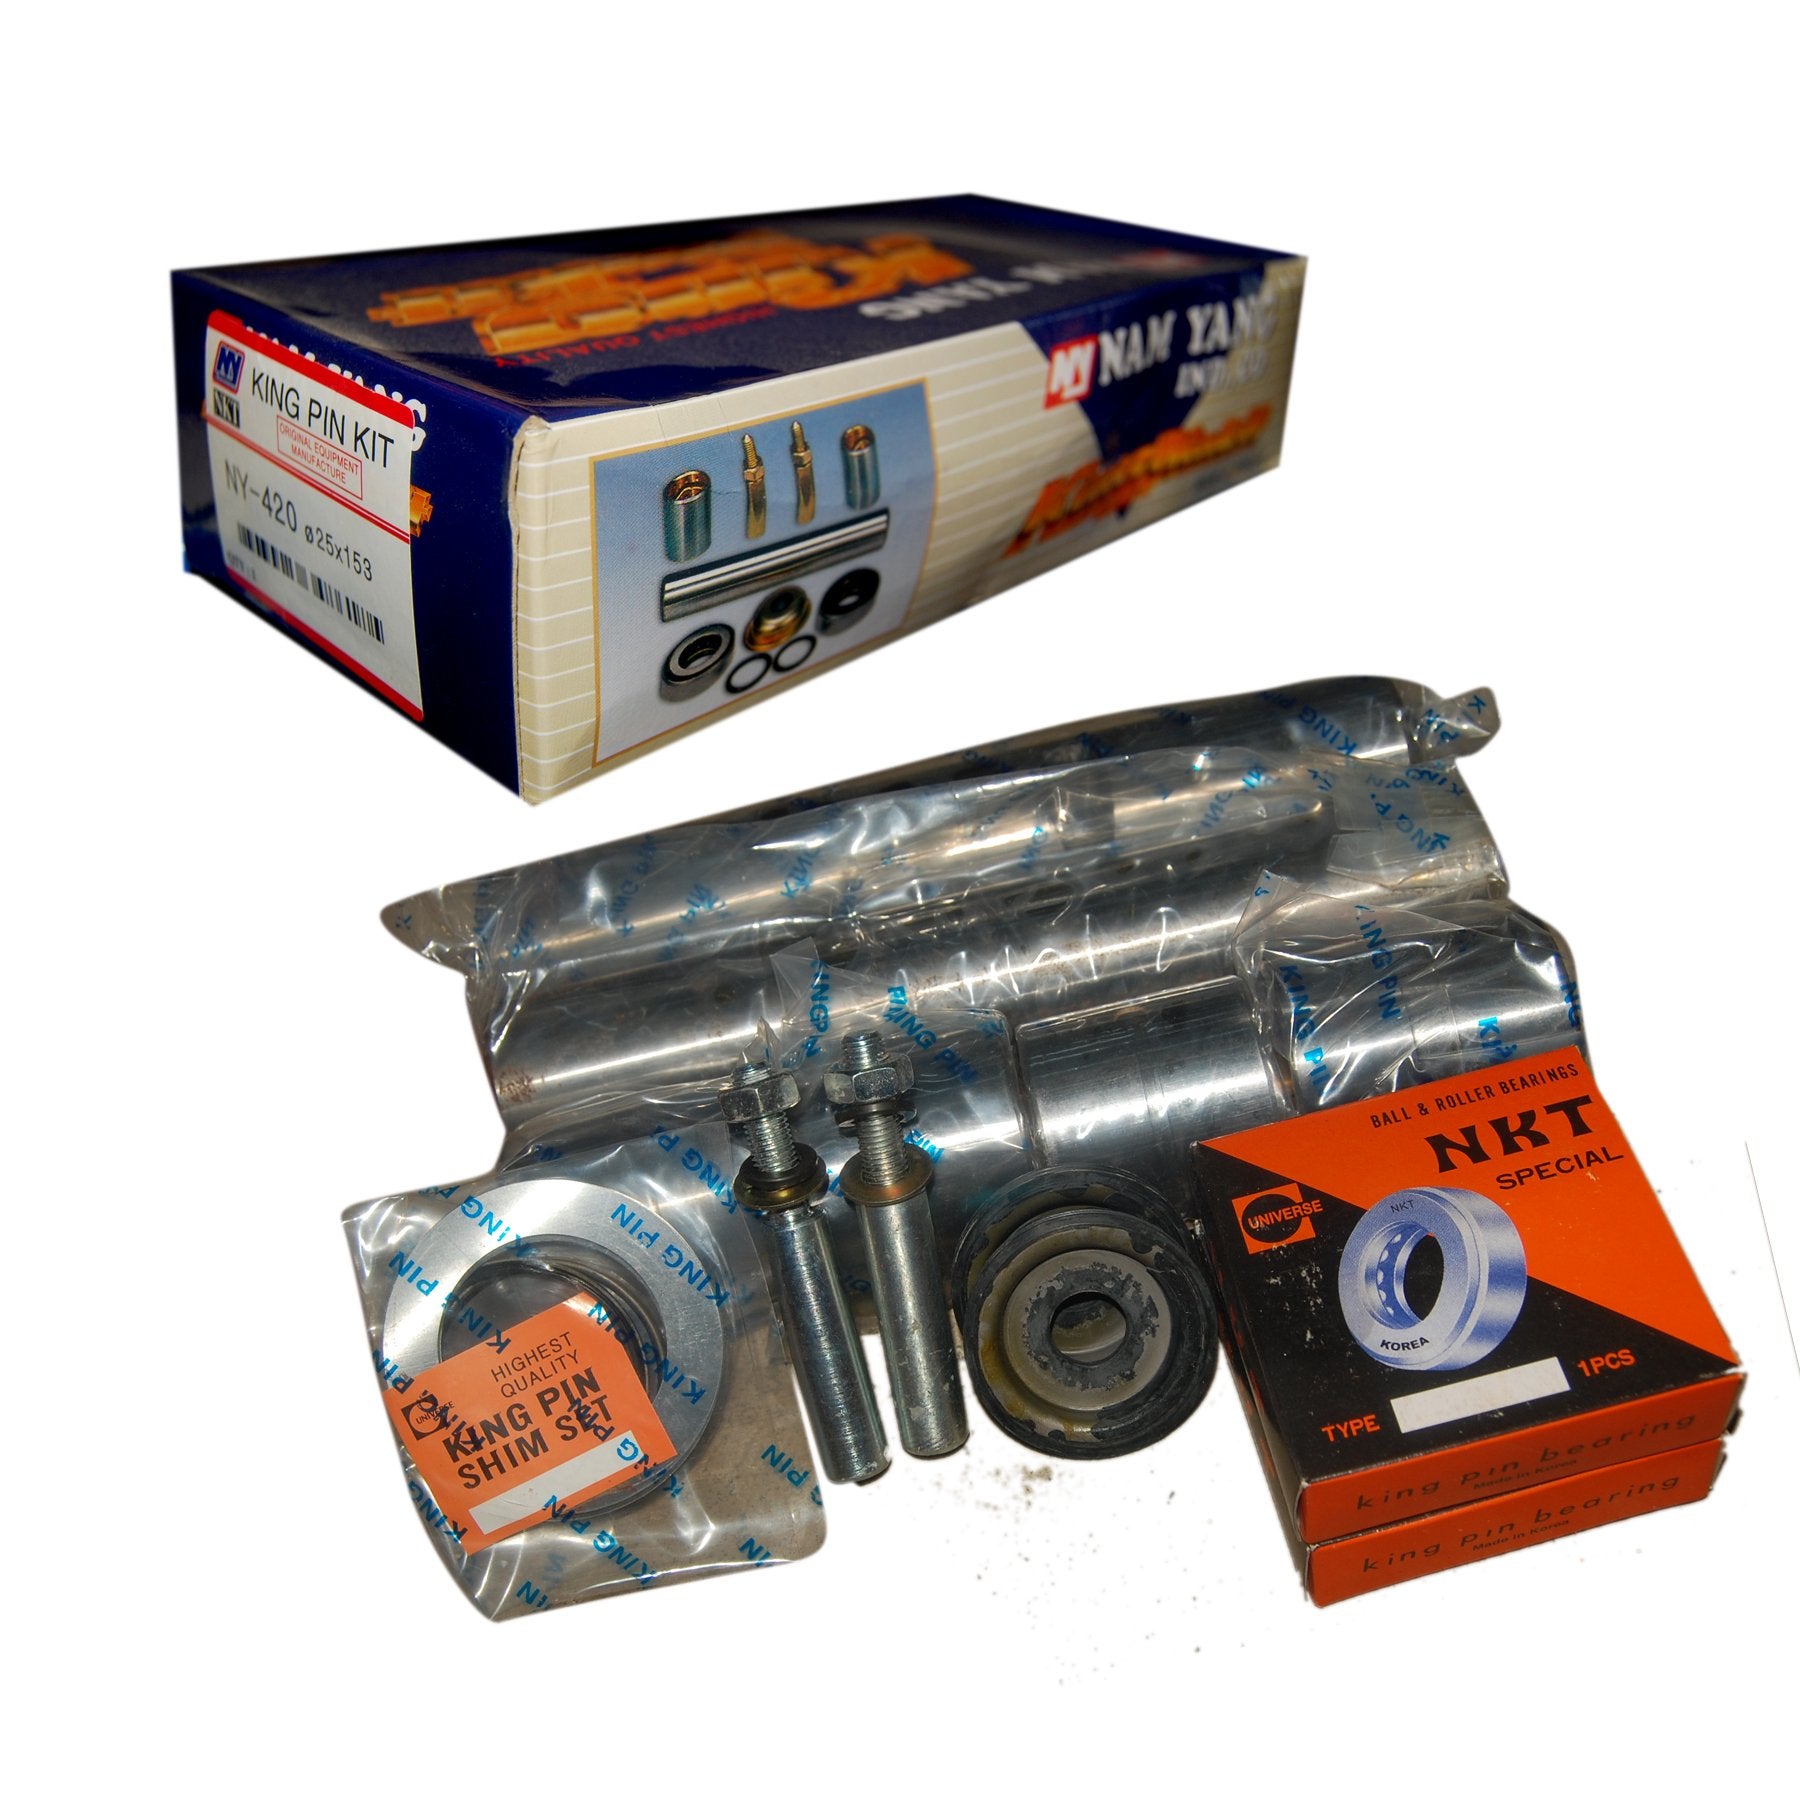 King Pin Kit, NAM YANG, 30x174, 13169930, NY-605 (001262) – Win Store